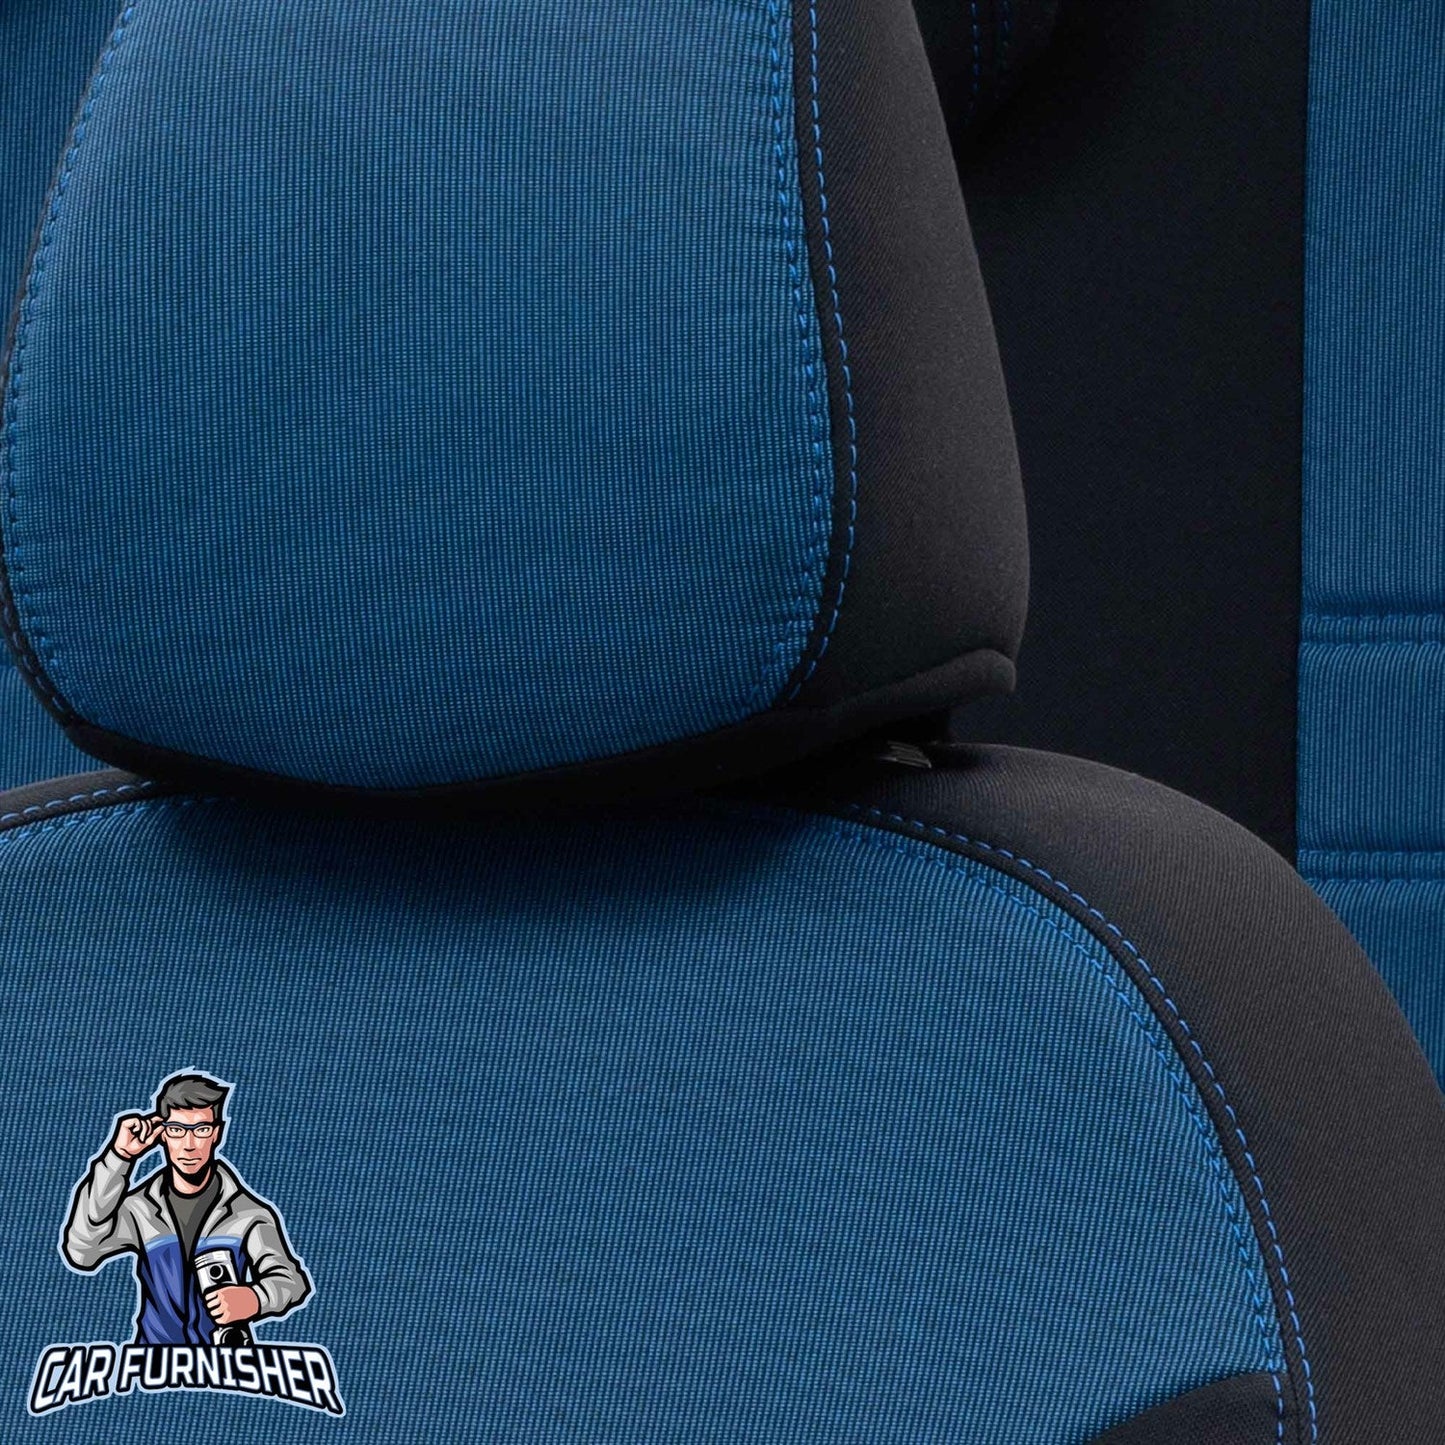 Mercedes E Class Seat Covers Original Jacquard Design Blue Jacquard Fabric